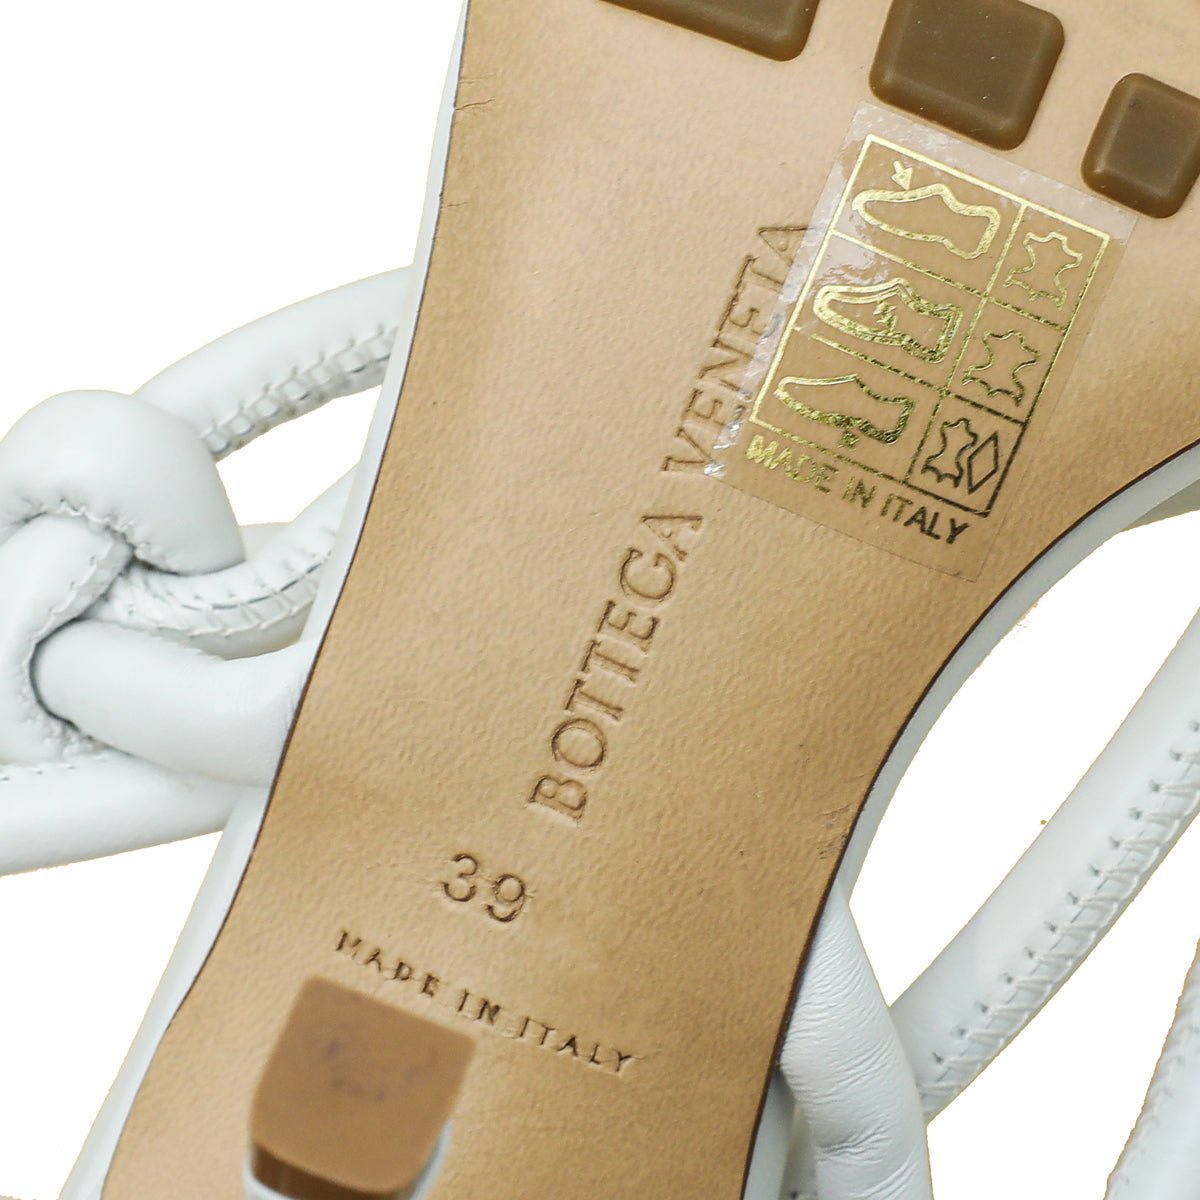 Bottega Veneta - Bottega Veneta Optic White Knot Sandals 39 | The Closet